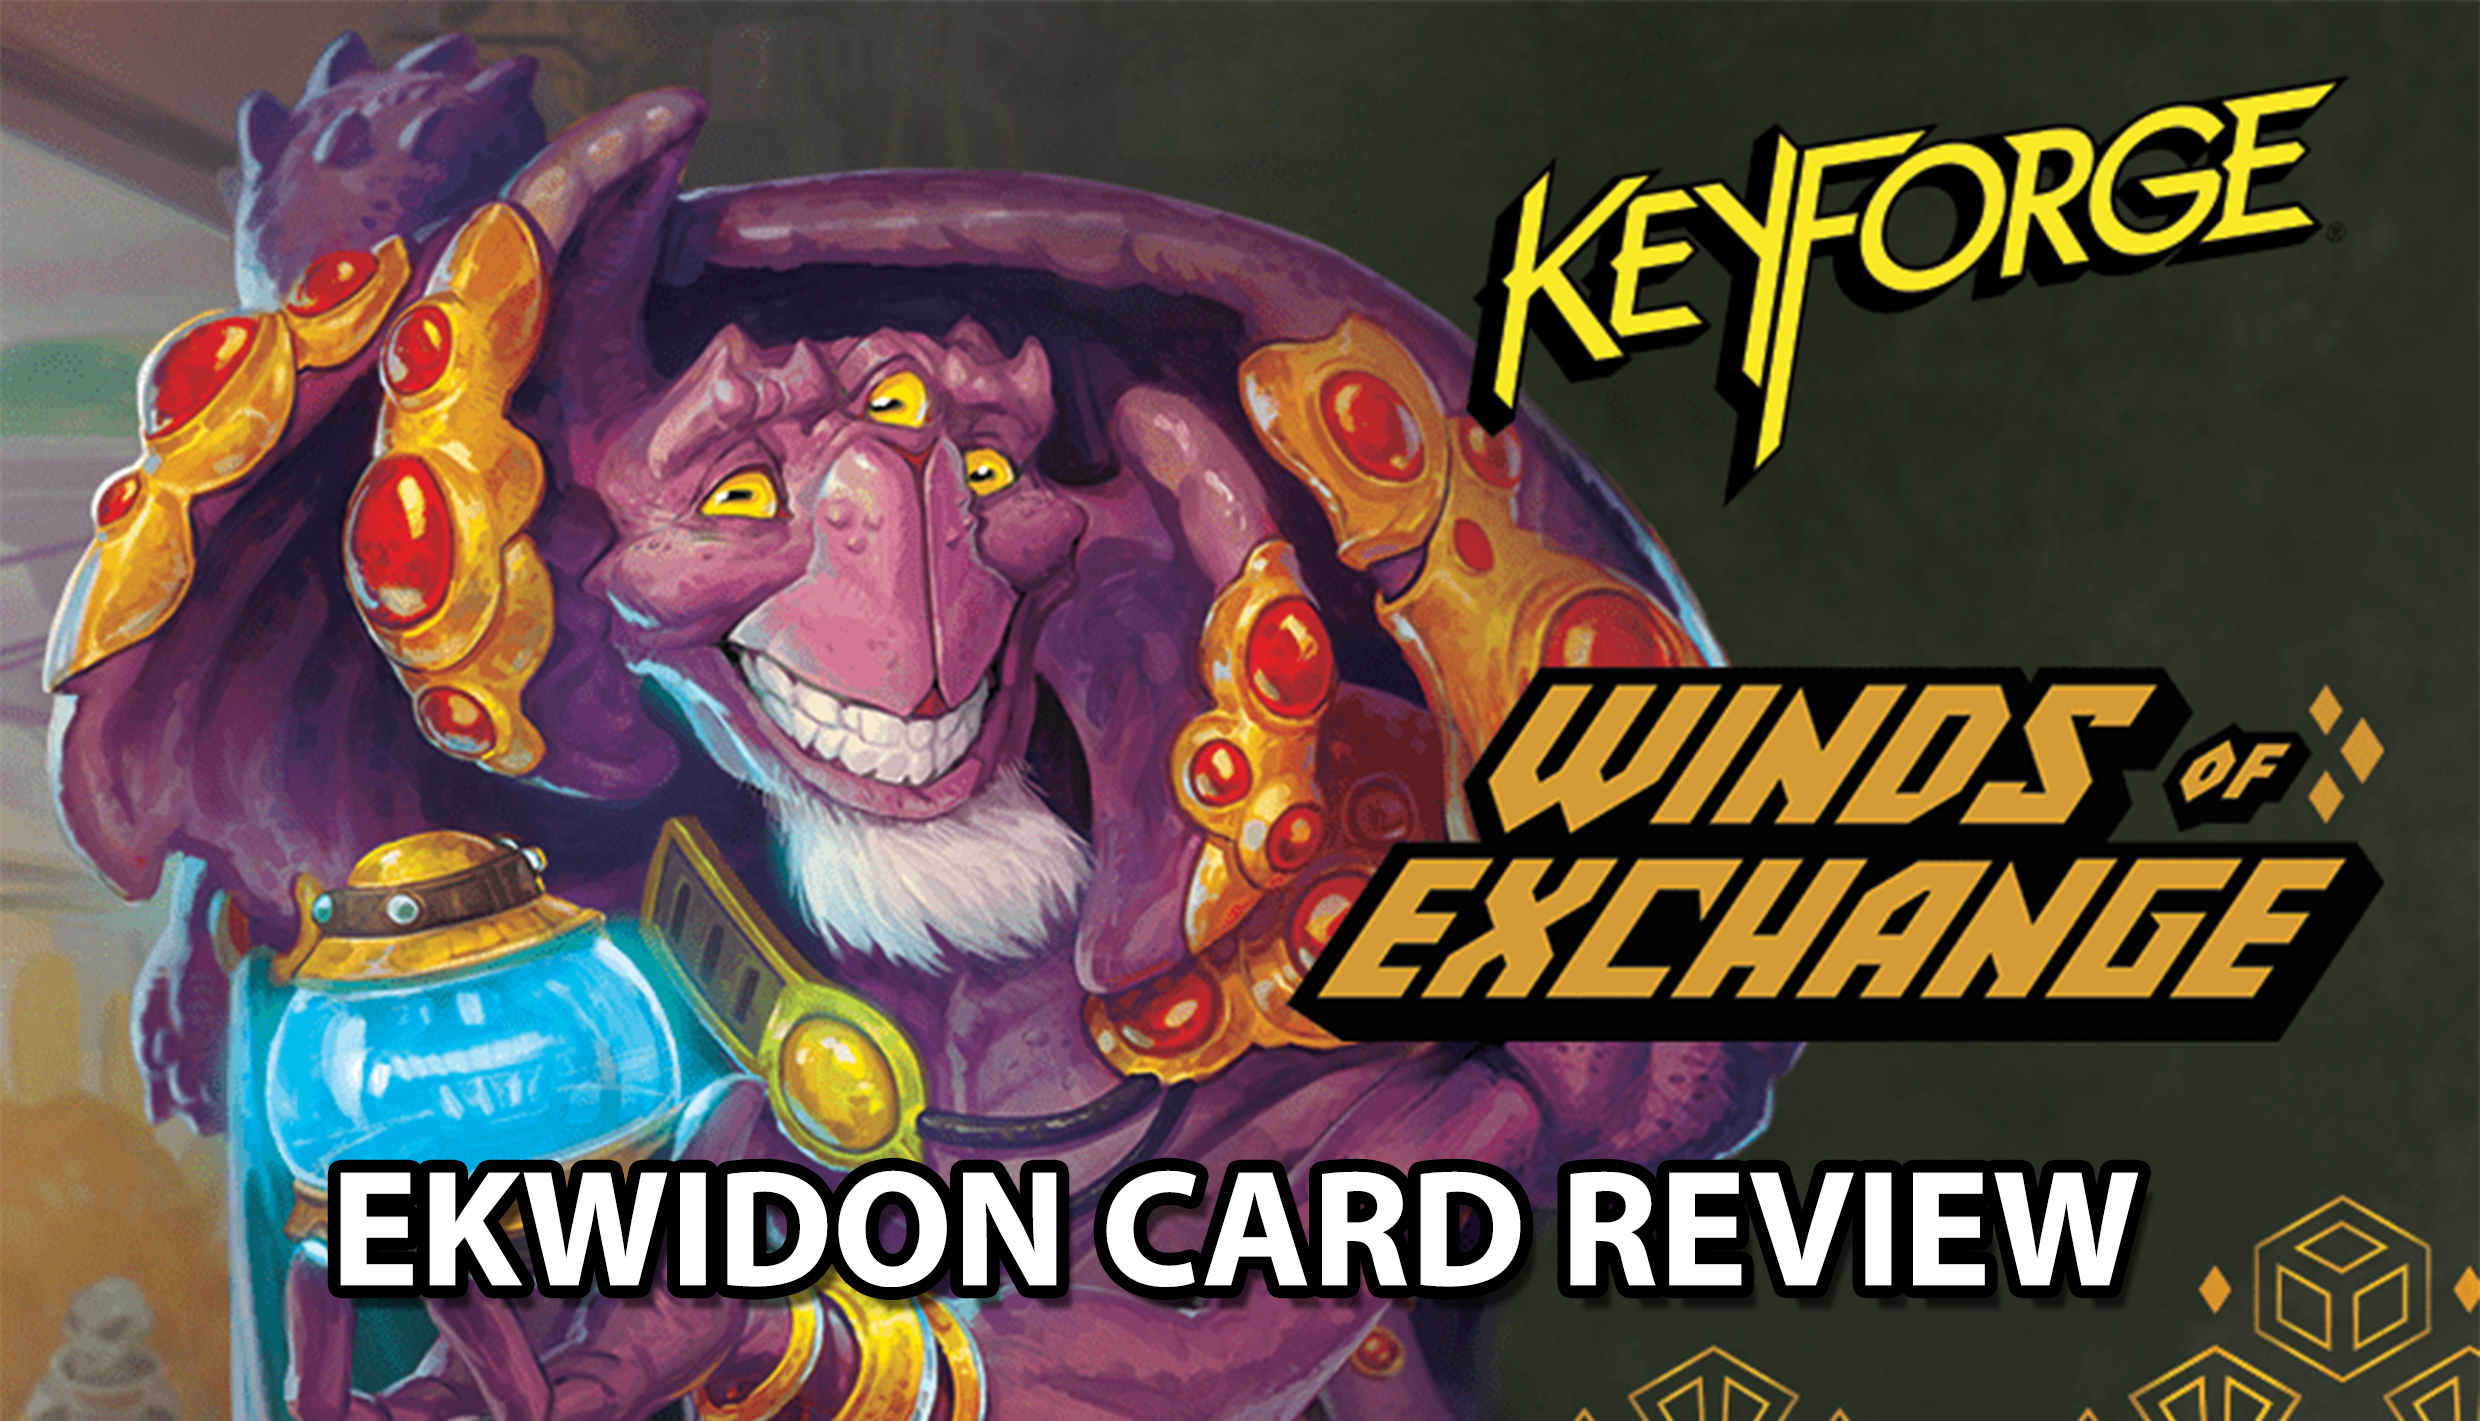 Wind of Exchange Card Review – Ekwidon